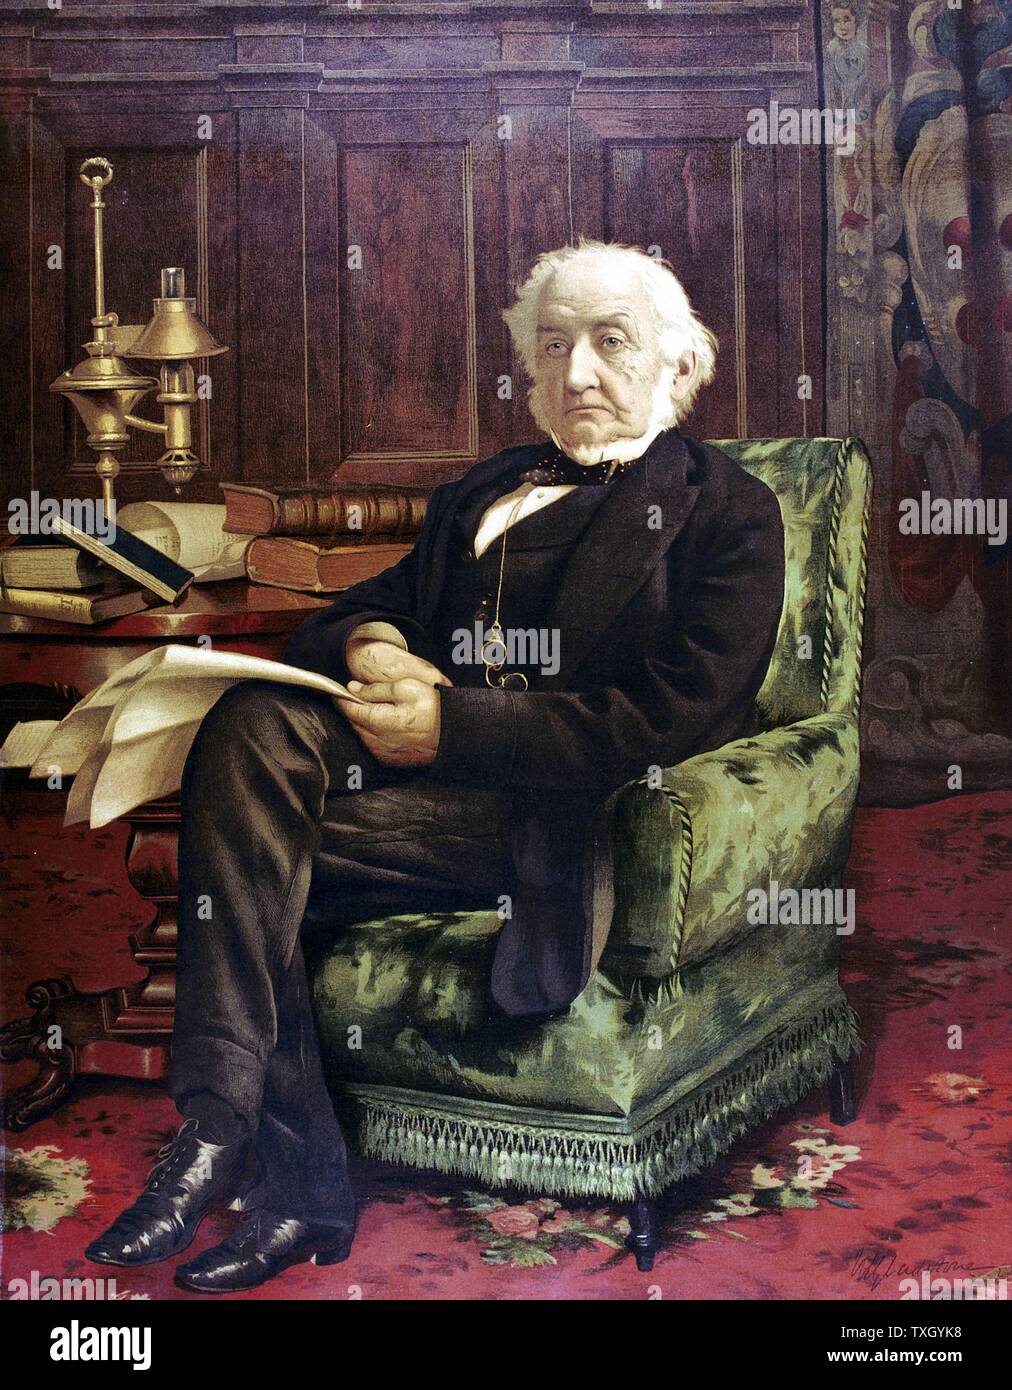 William Ewart Gladstone (1809-98) comme un vieil homme assis dans son étude. Homme d'État libéral britannique. Oleograph publié c1890 Banque D'Images